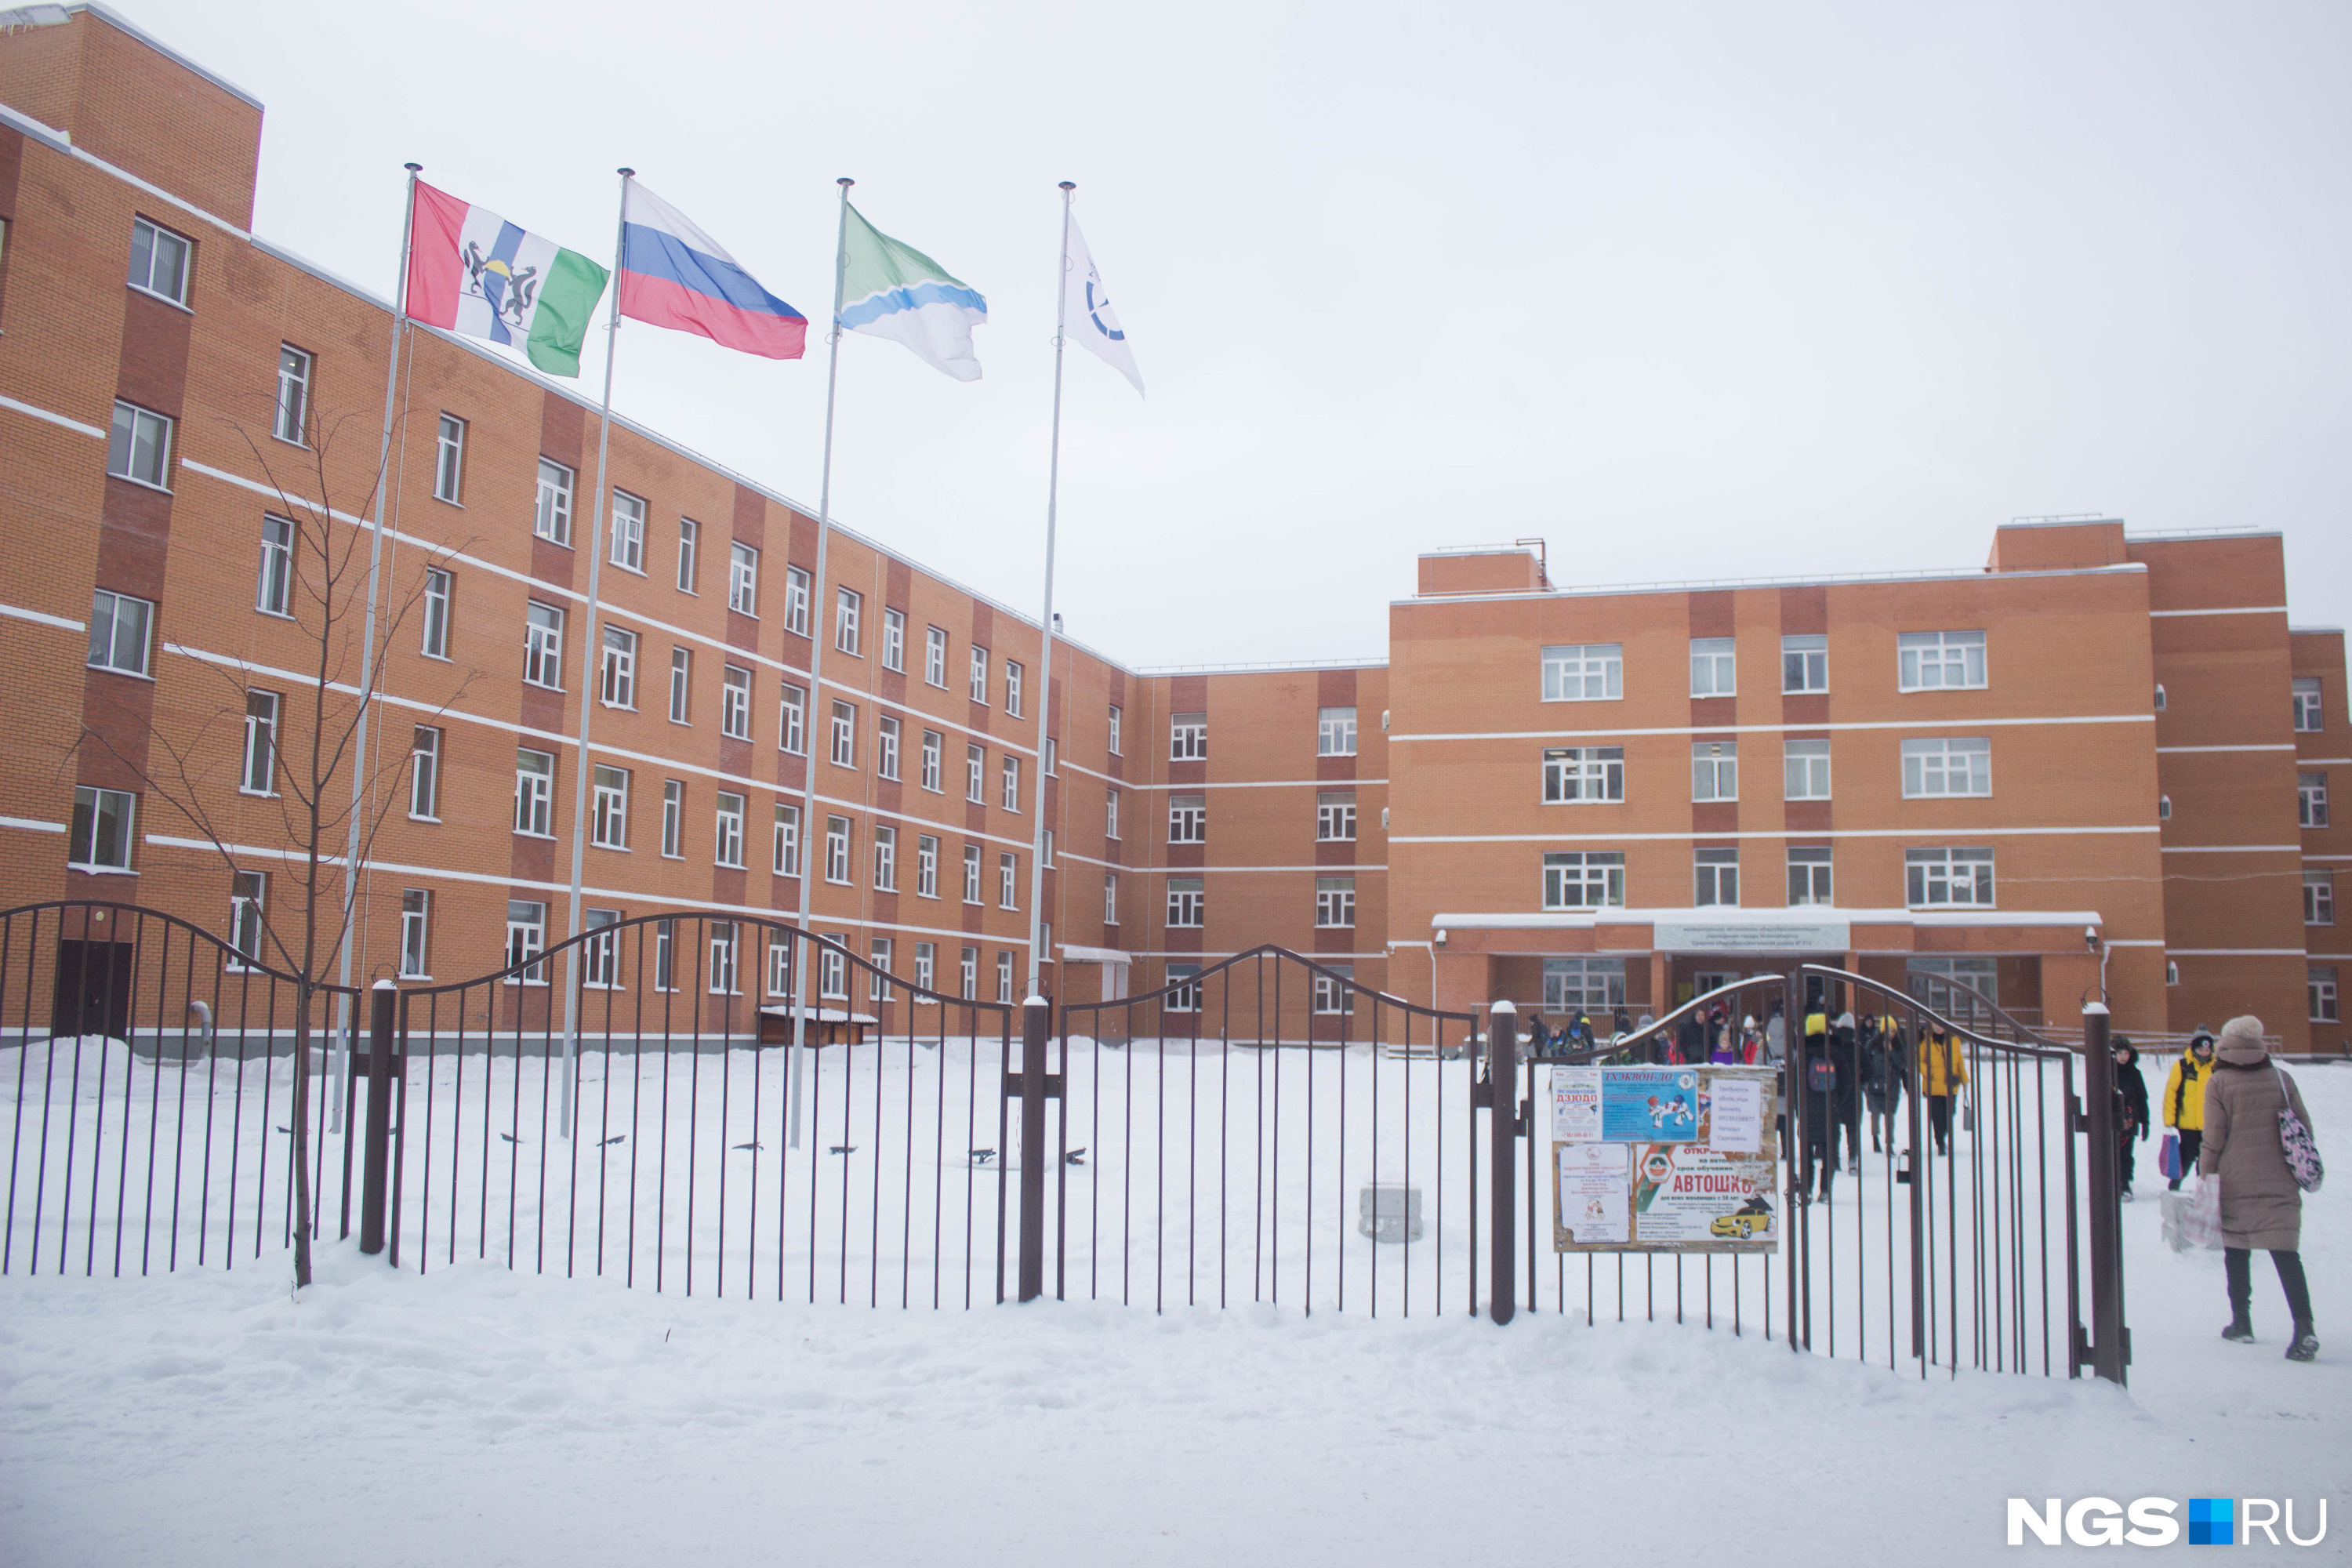 Самая большая в Новосибирске школа (<nobr class="_">№ 216</nobr>), которая вмещает более 1000 учеников